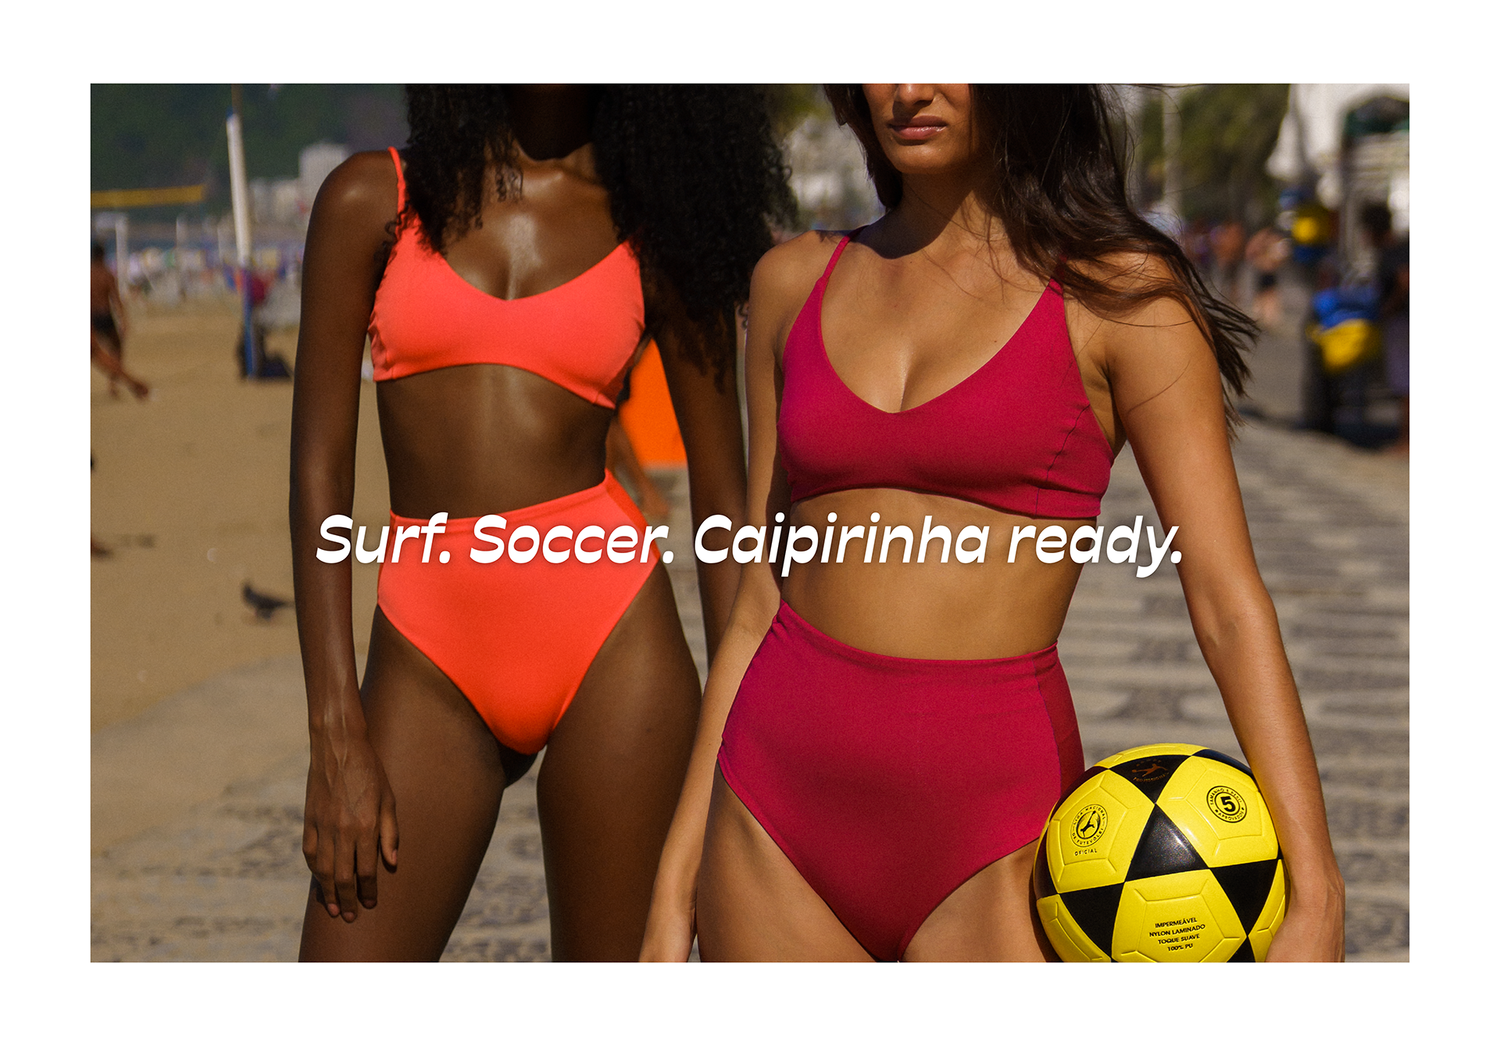 Surf. Soccer. Caipirinha ready.